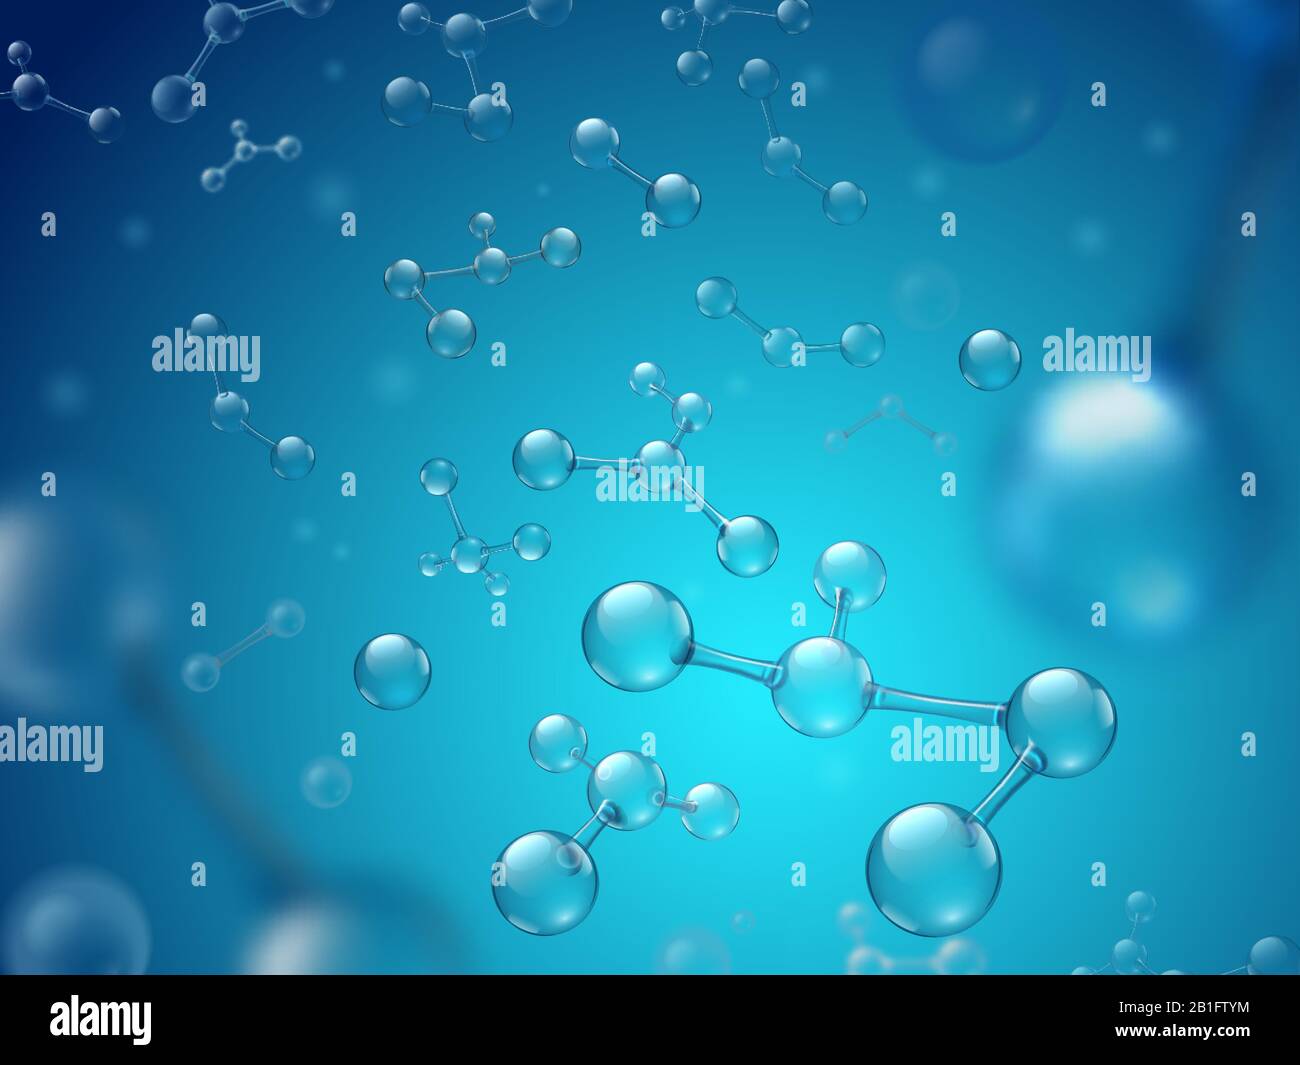 Molécules d'acide hyaluronique. Produits chimiques hydratés, structure moléculaire et illustration vectorielle en 3 dimensions de la molécule sphérique bleue Illustration de Vecteur